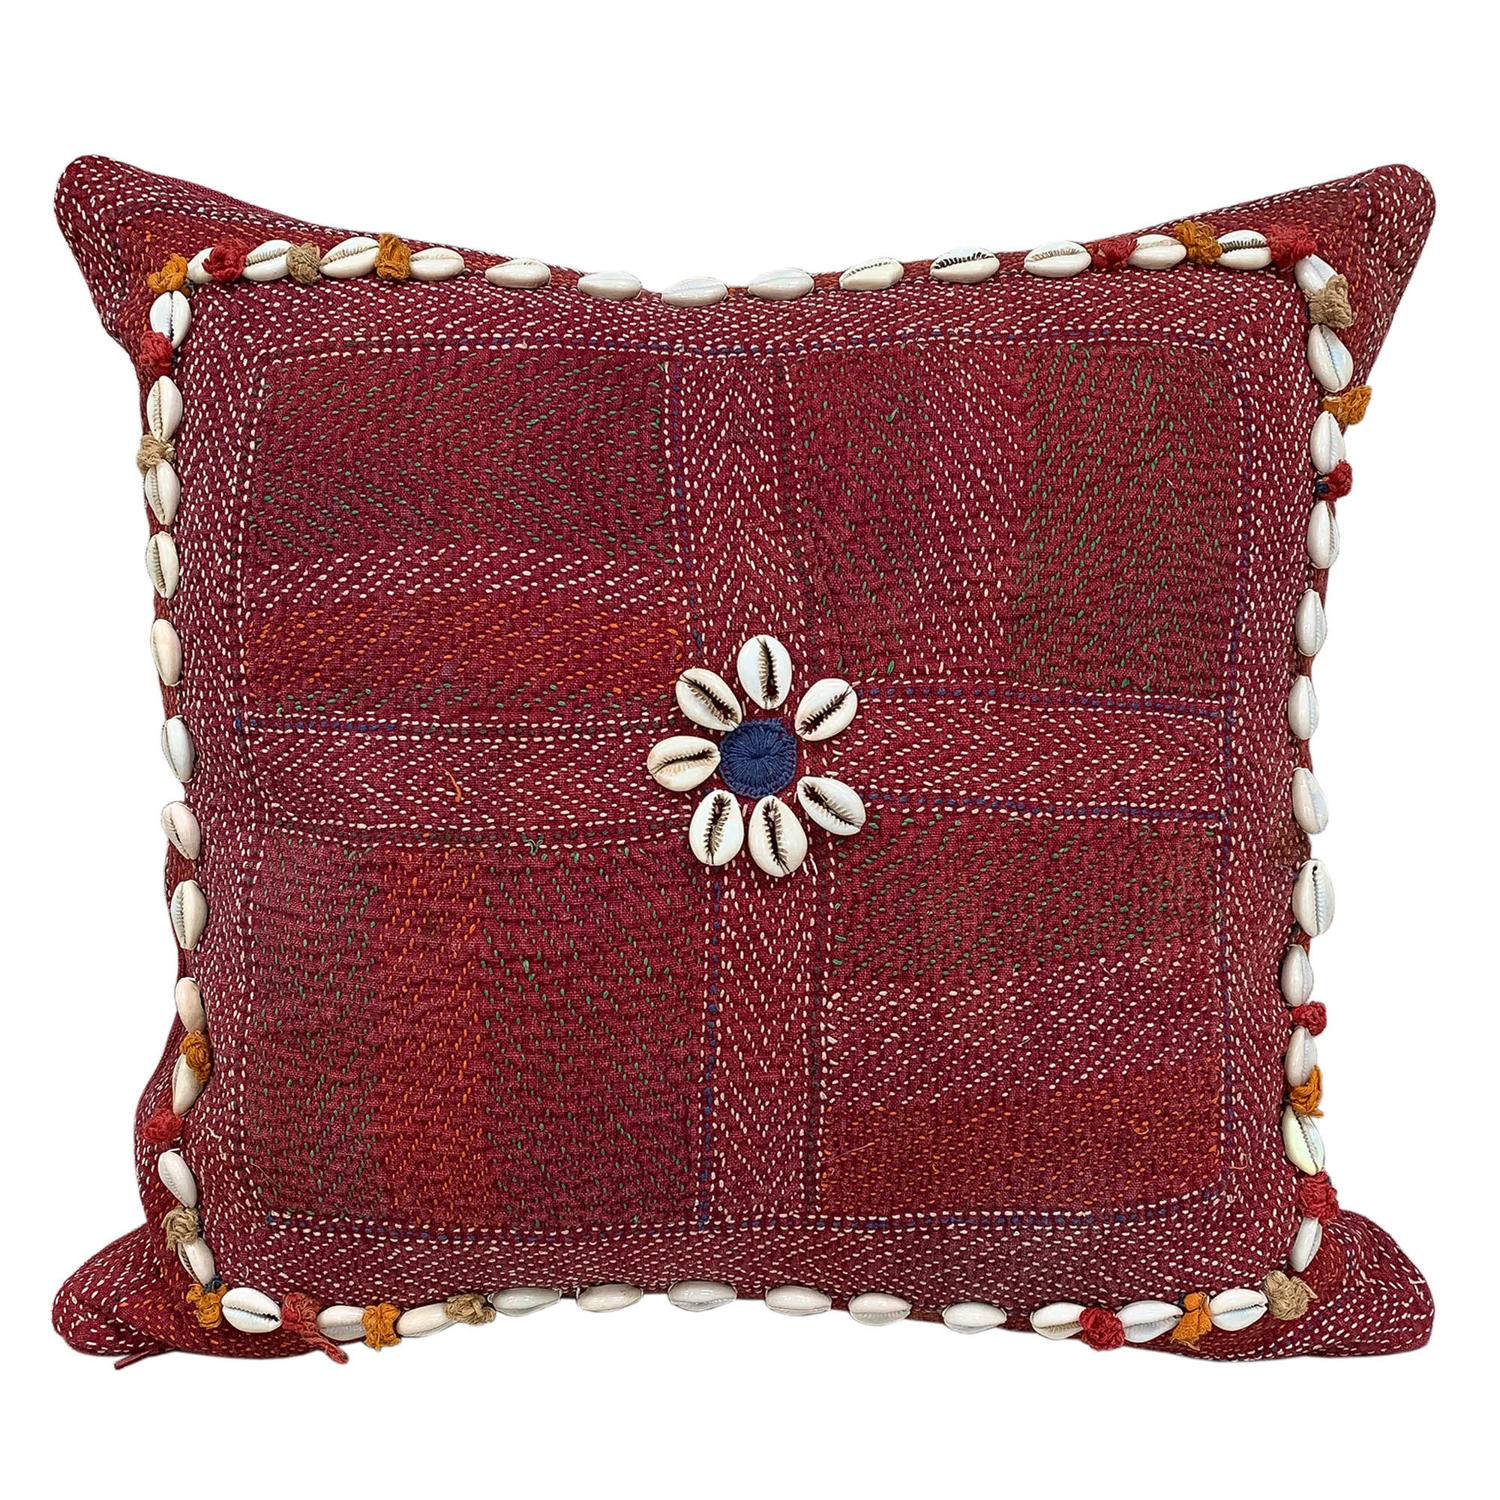 Banjara kalchi cushion with cowries